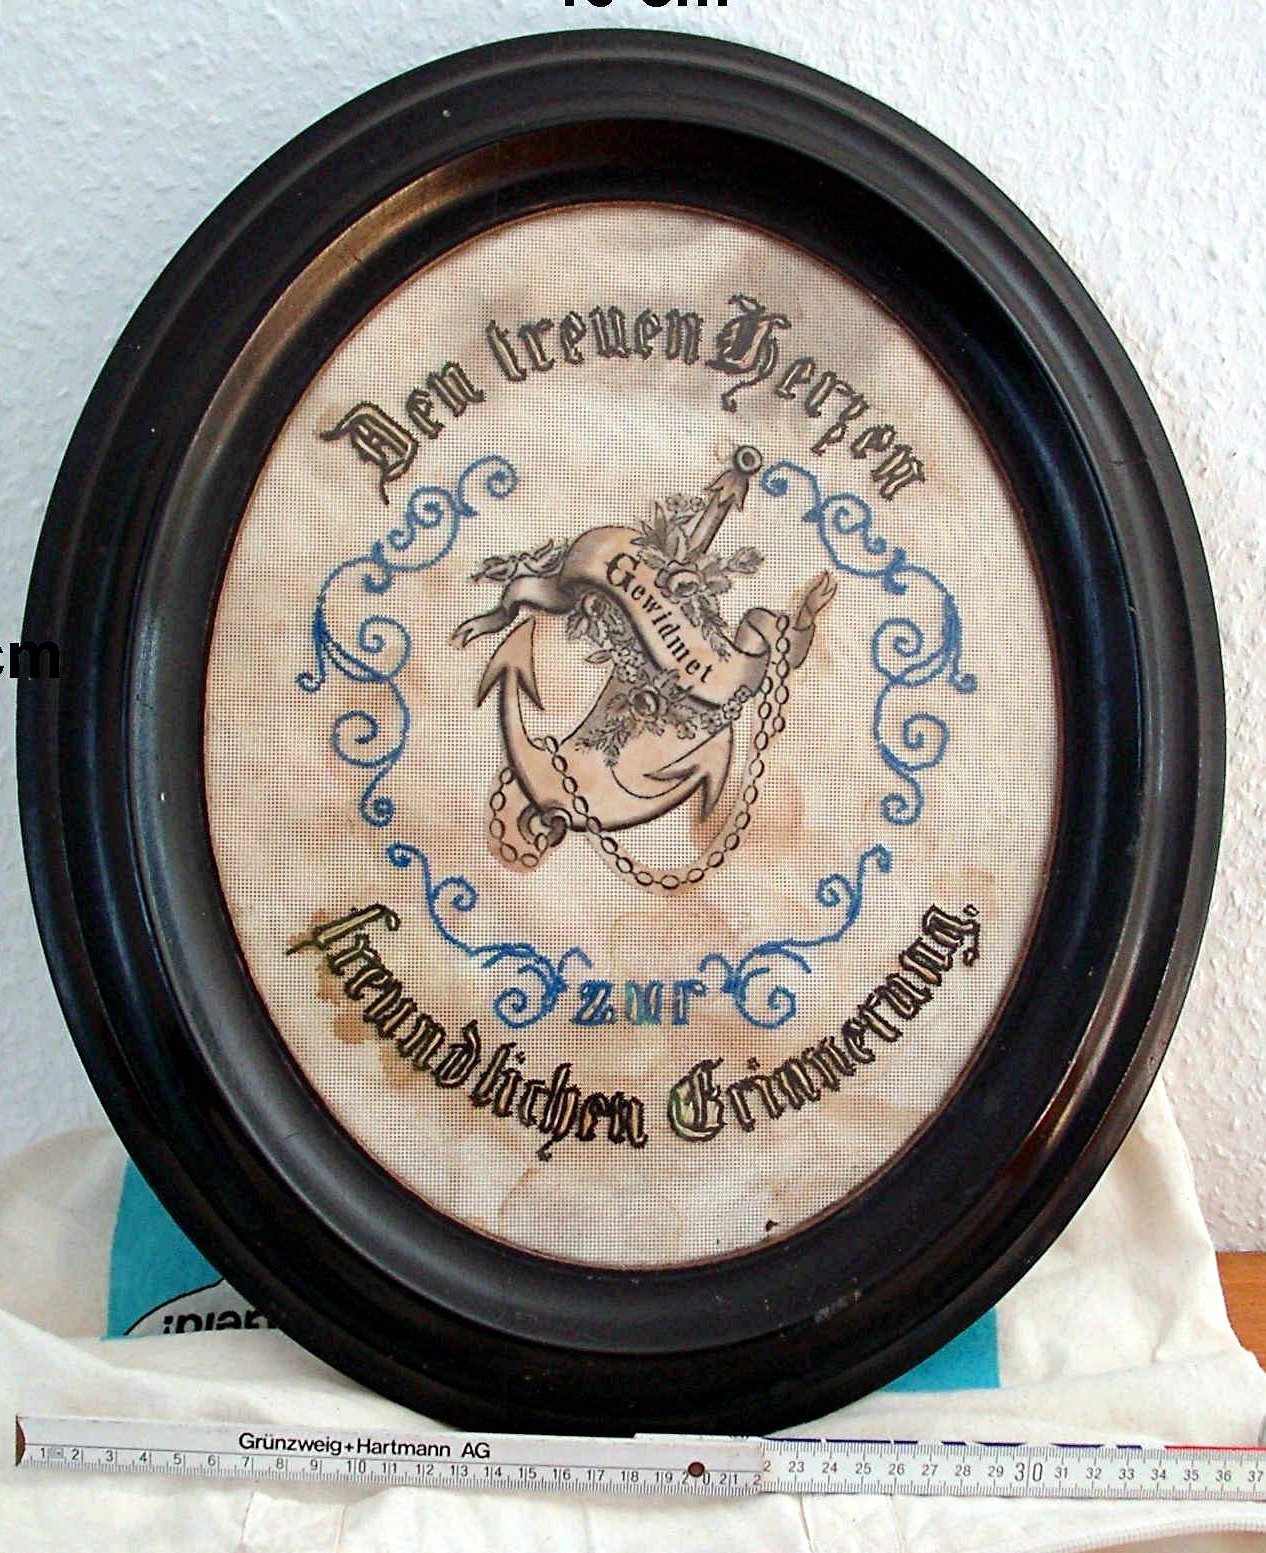 Handarbeit; Stickerei; "Den treuen Herzen gewidmet zur freundlichen Erinnerung"; 19. Jh. (Stadtmuseum Bad Dürkheim, Museumsgesellschaft Bad Dürkheim e.V. CC BY-NC-SA)